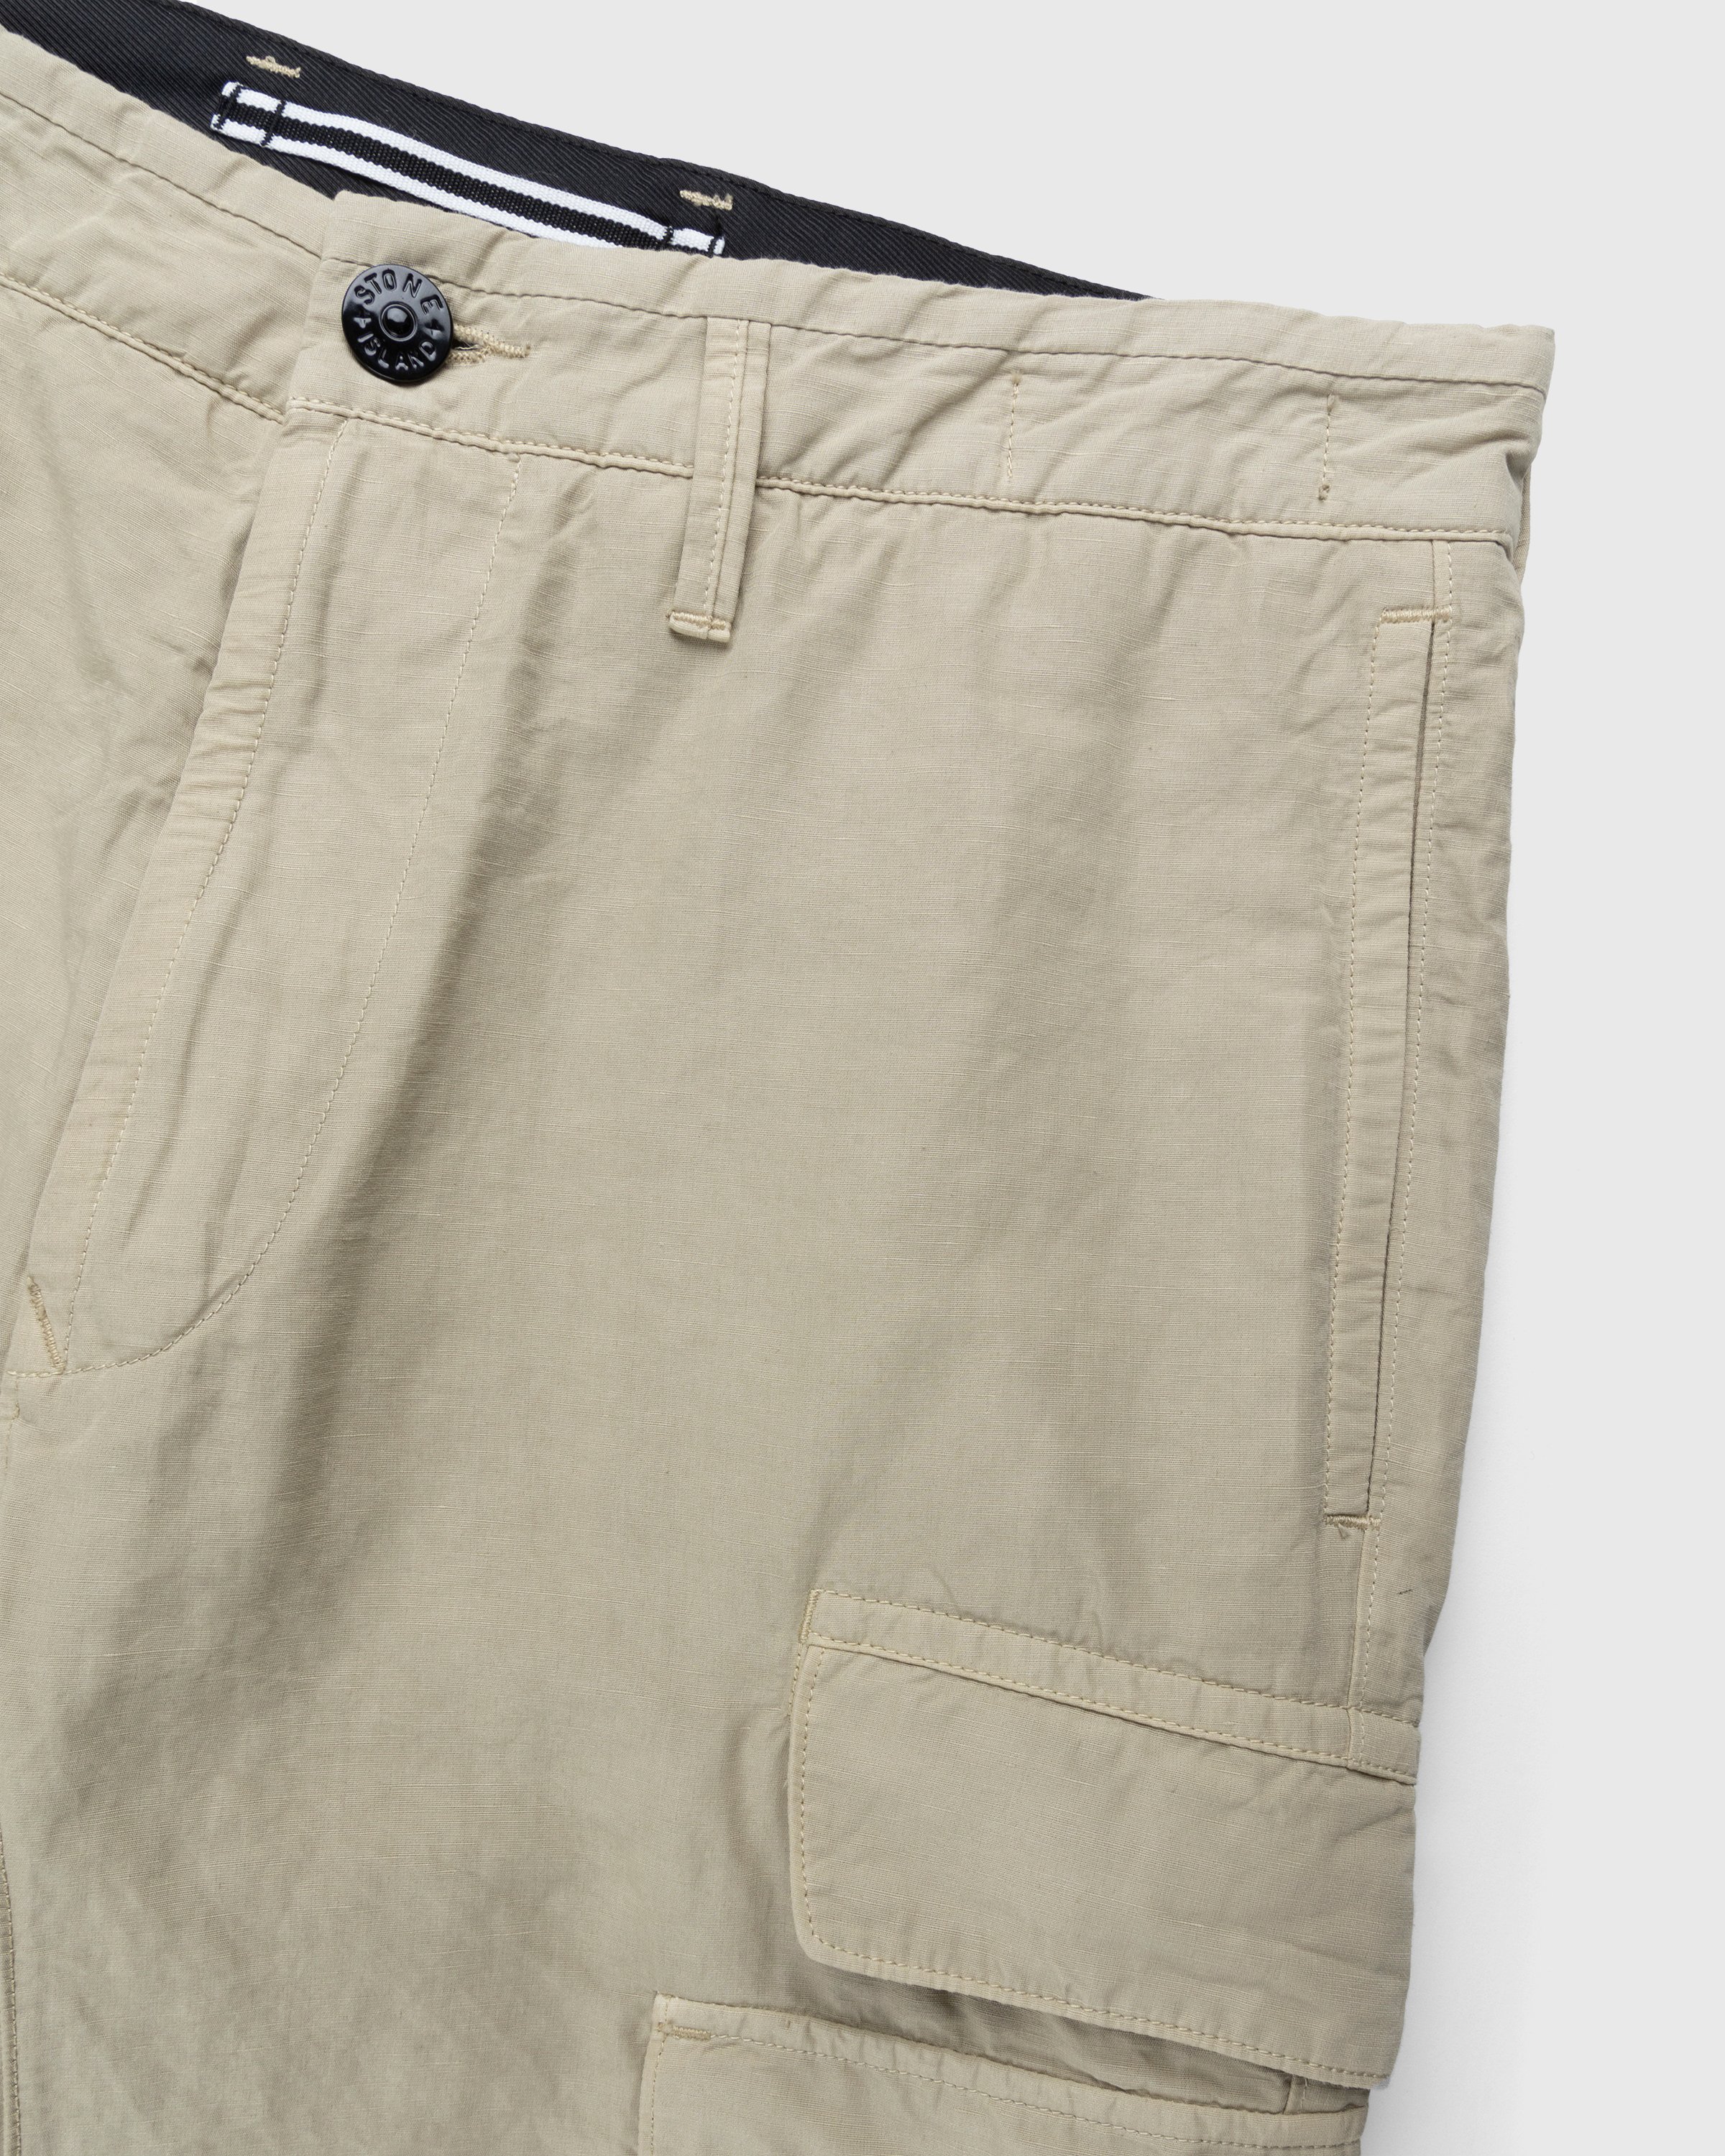 Stone Island - 31706 Garment-Dyed Cargo Pants Khaki - Clothing - Beige - Image 3